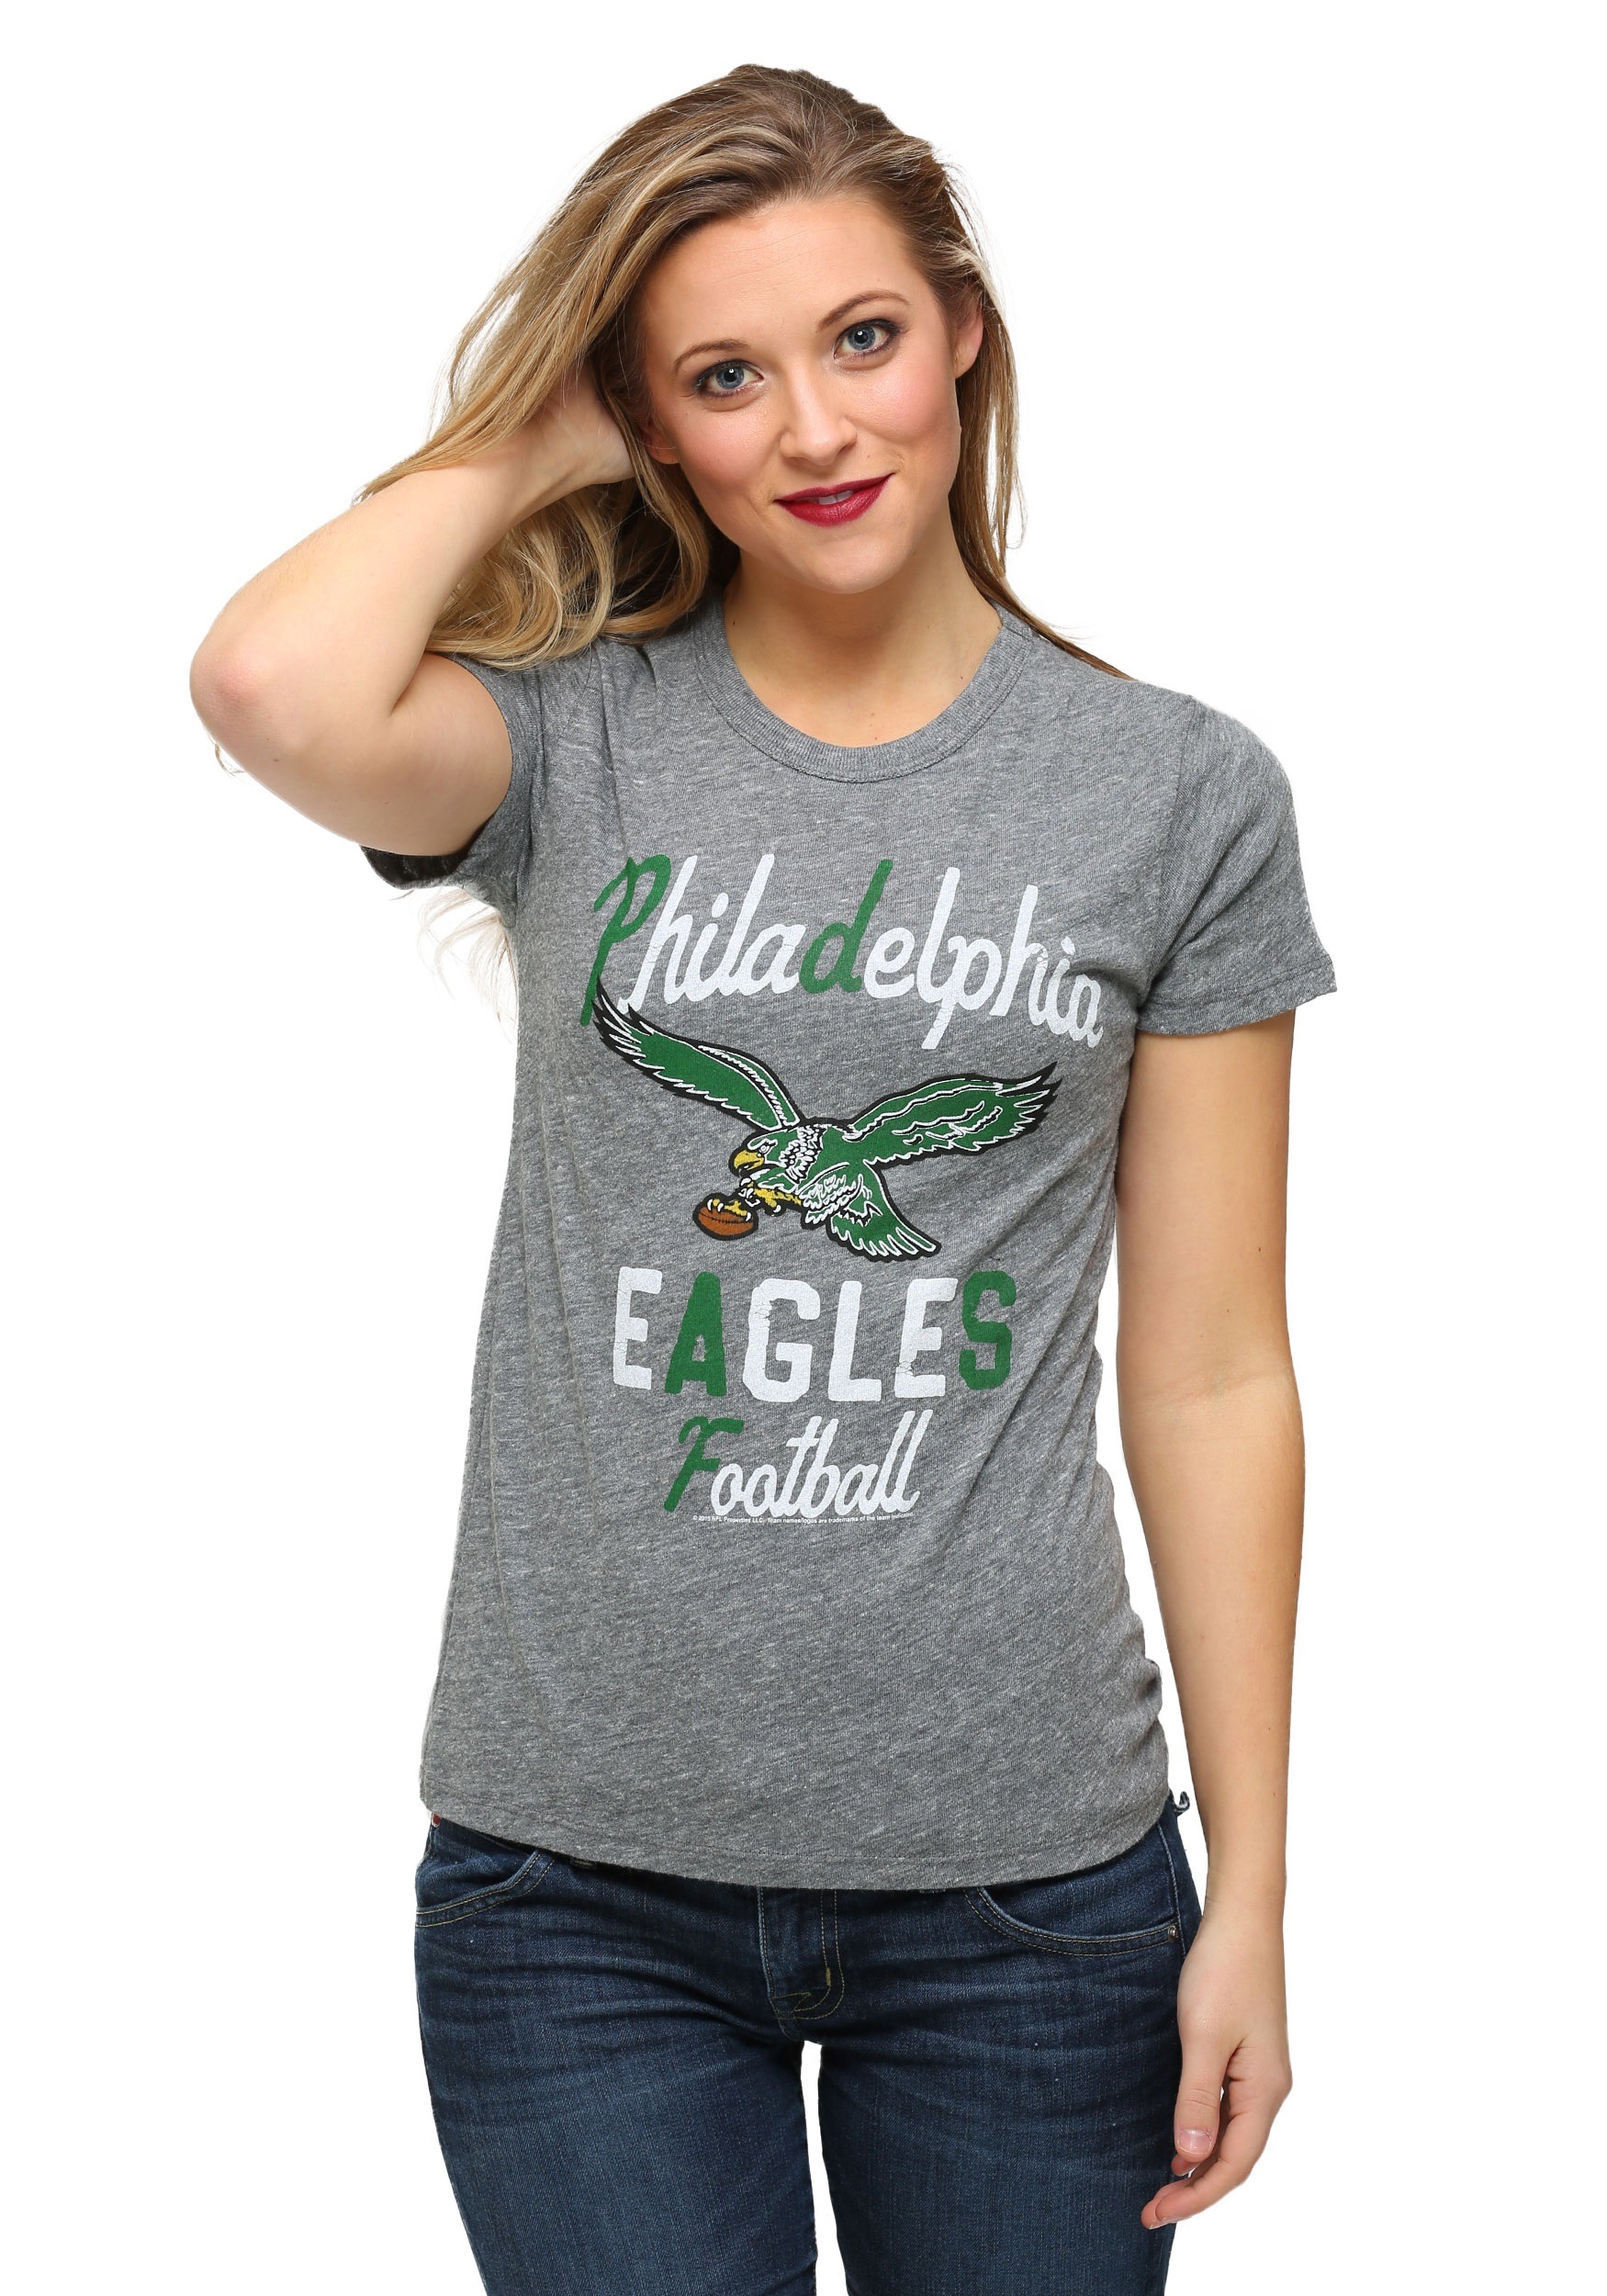 eagles tshirts for women